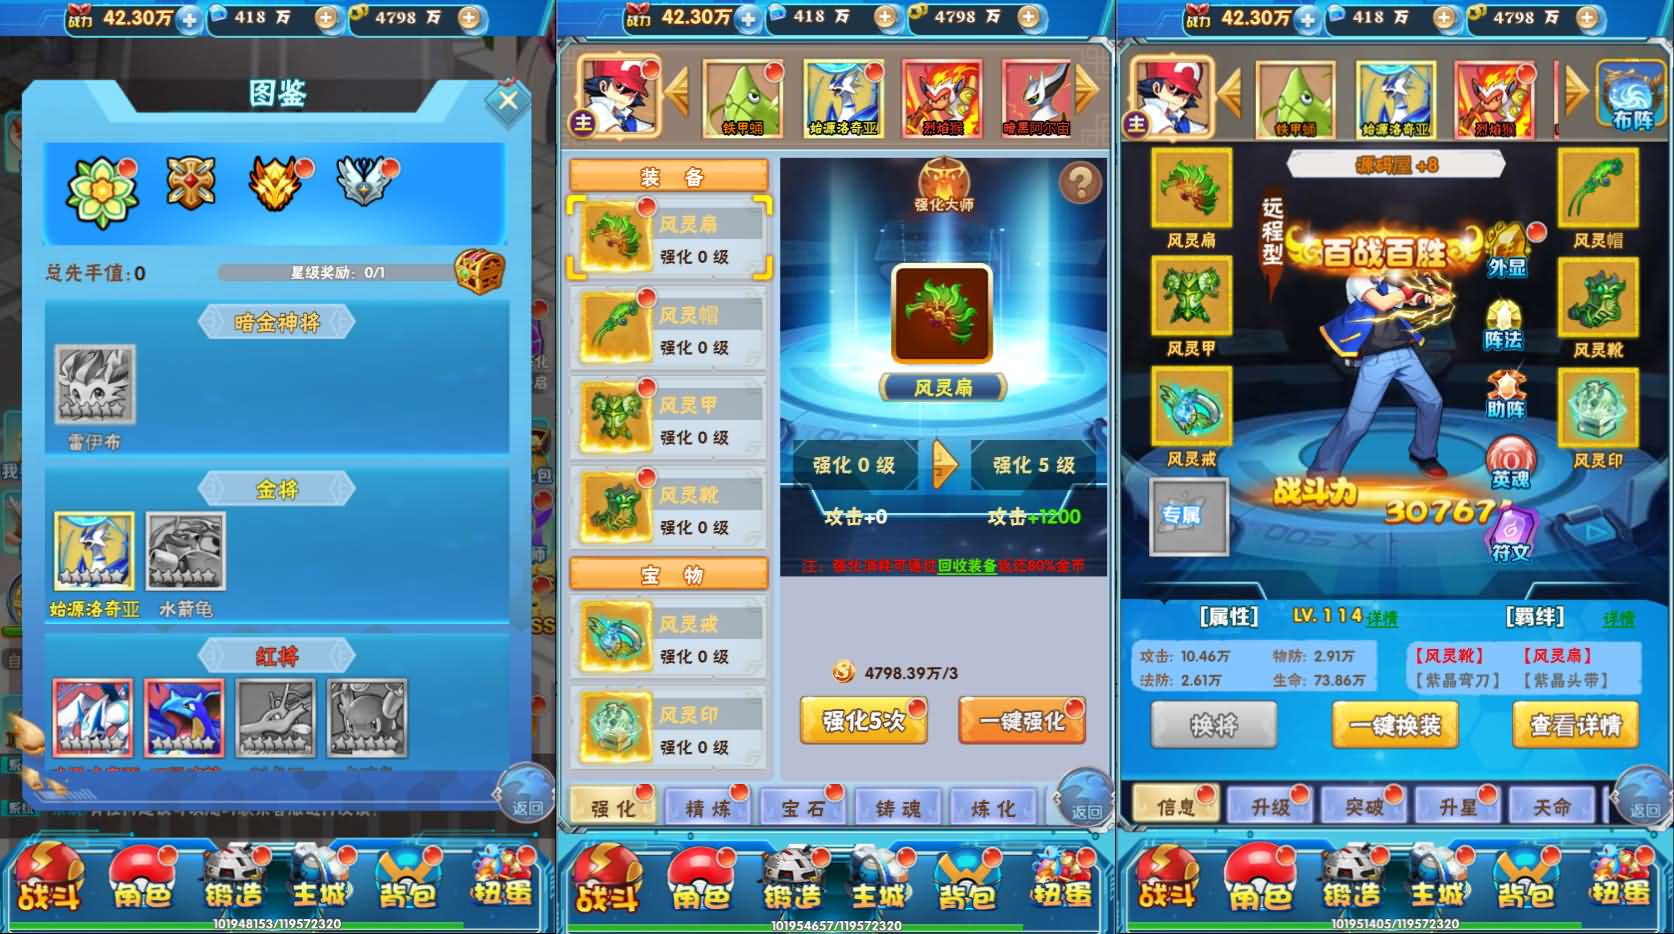 Game H5【Happy Pokemon H5-China】Server Win + Nhiều Server + GM Tool + Hướng Dẫn